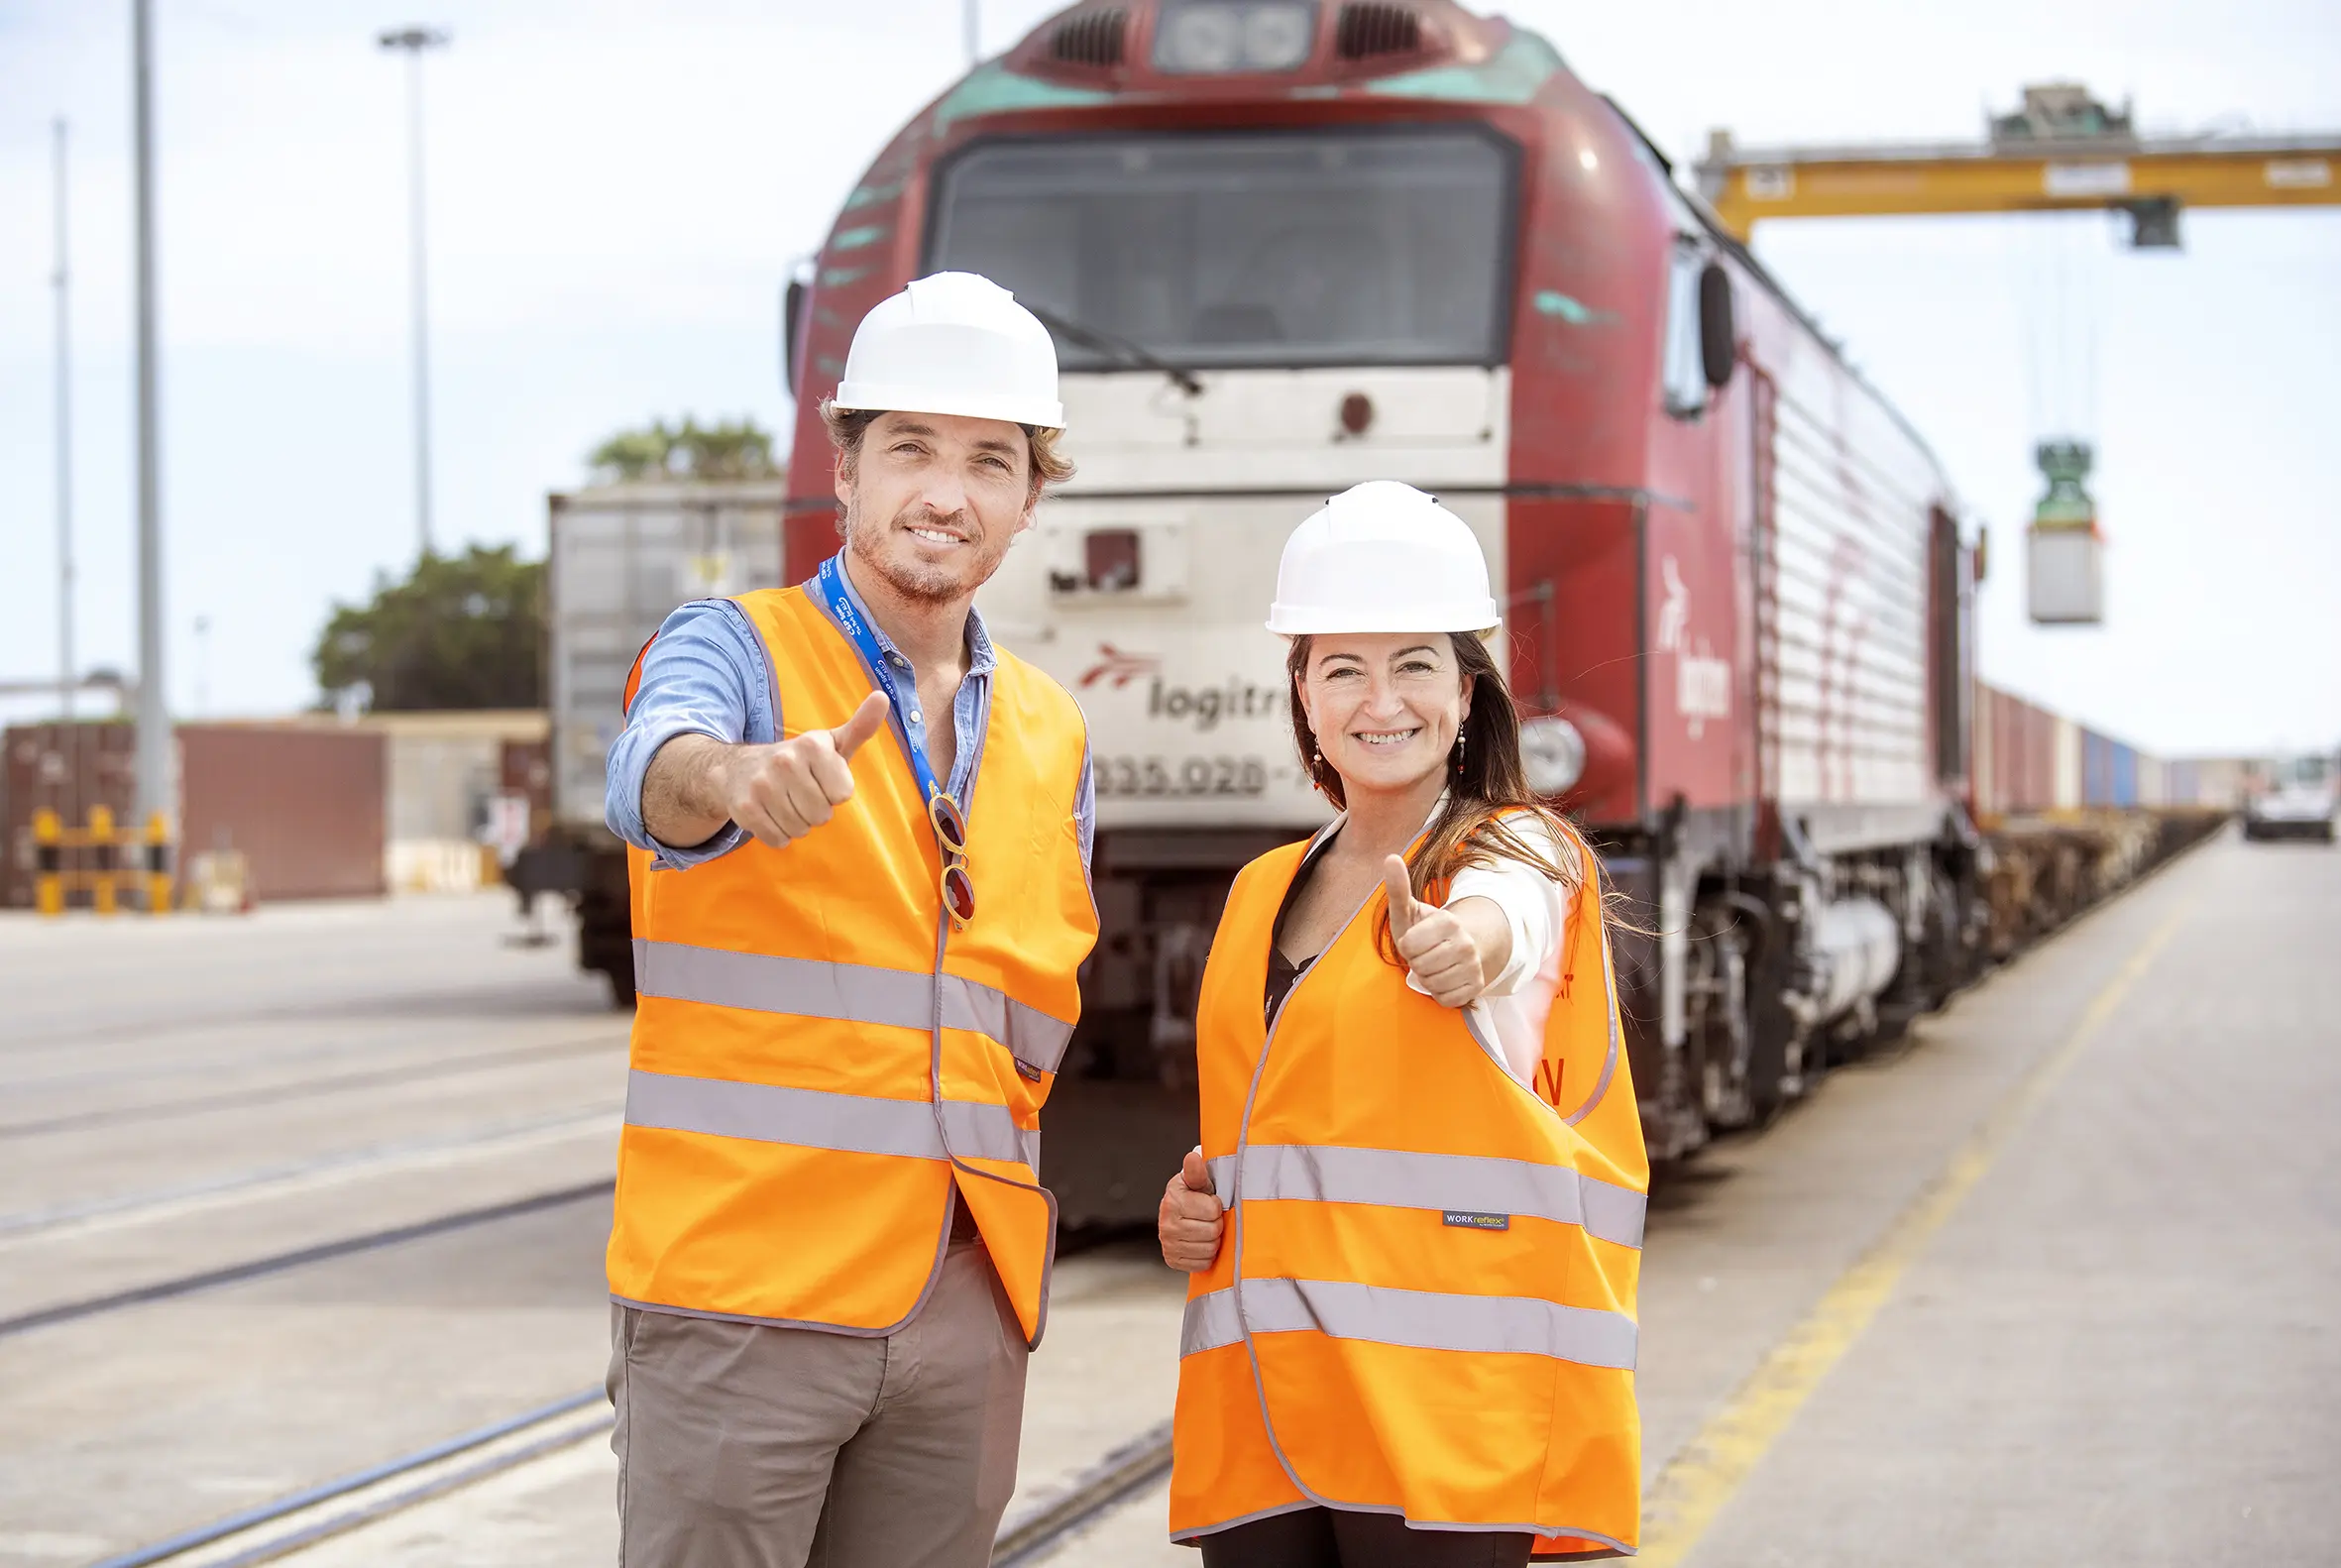 empleo ferroviario españa - Cuánto gana un ingeniero en ferrocarril